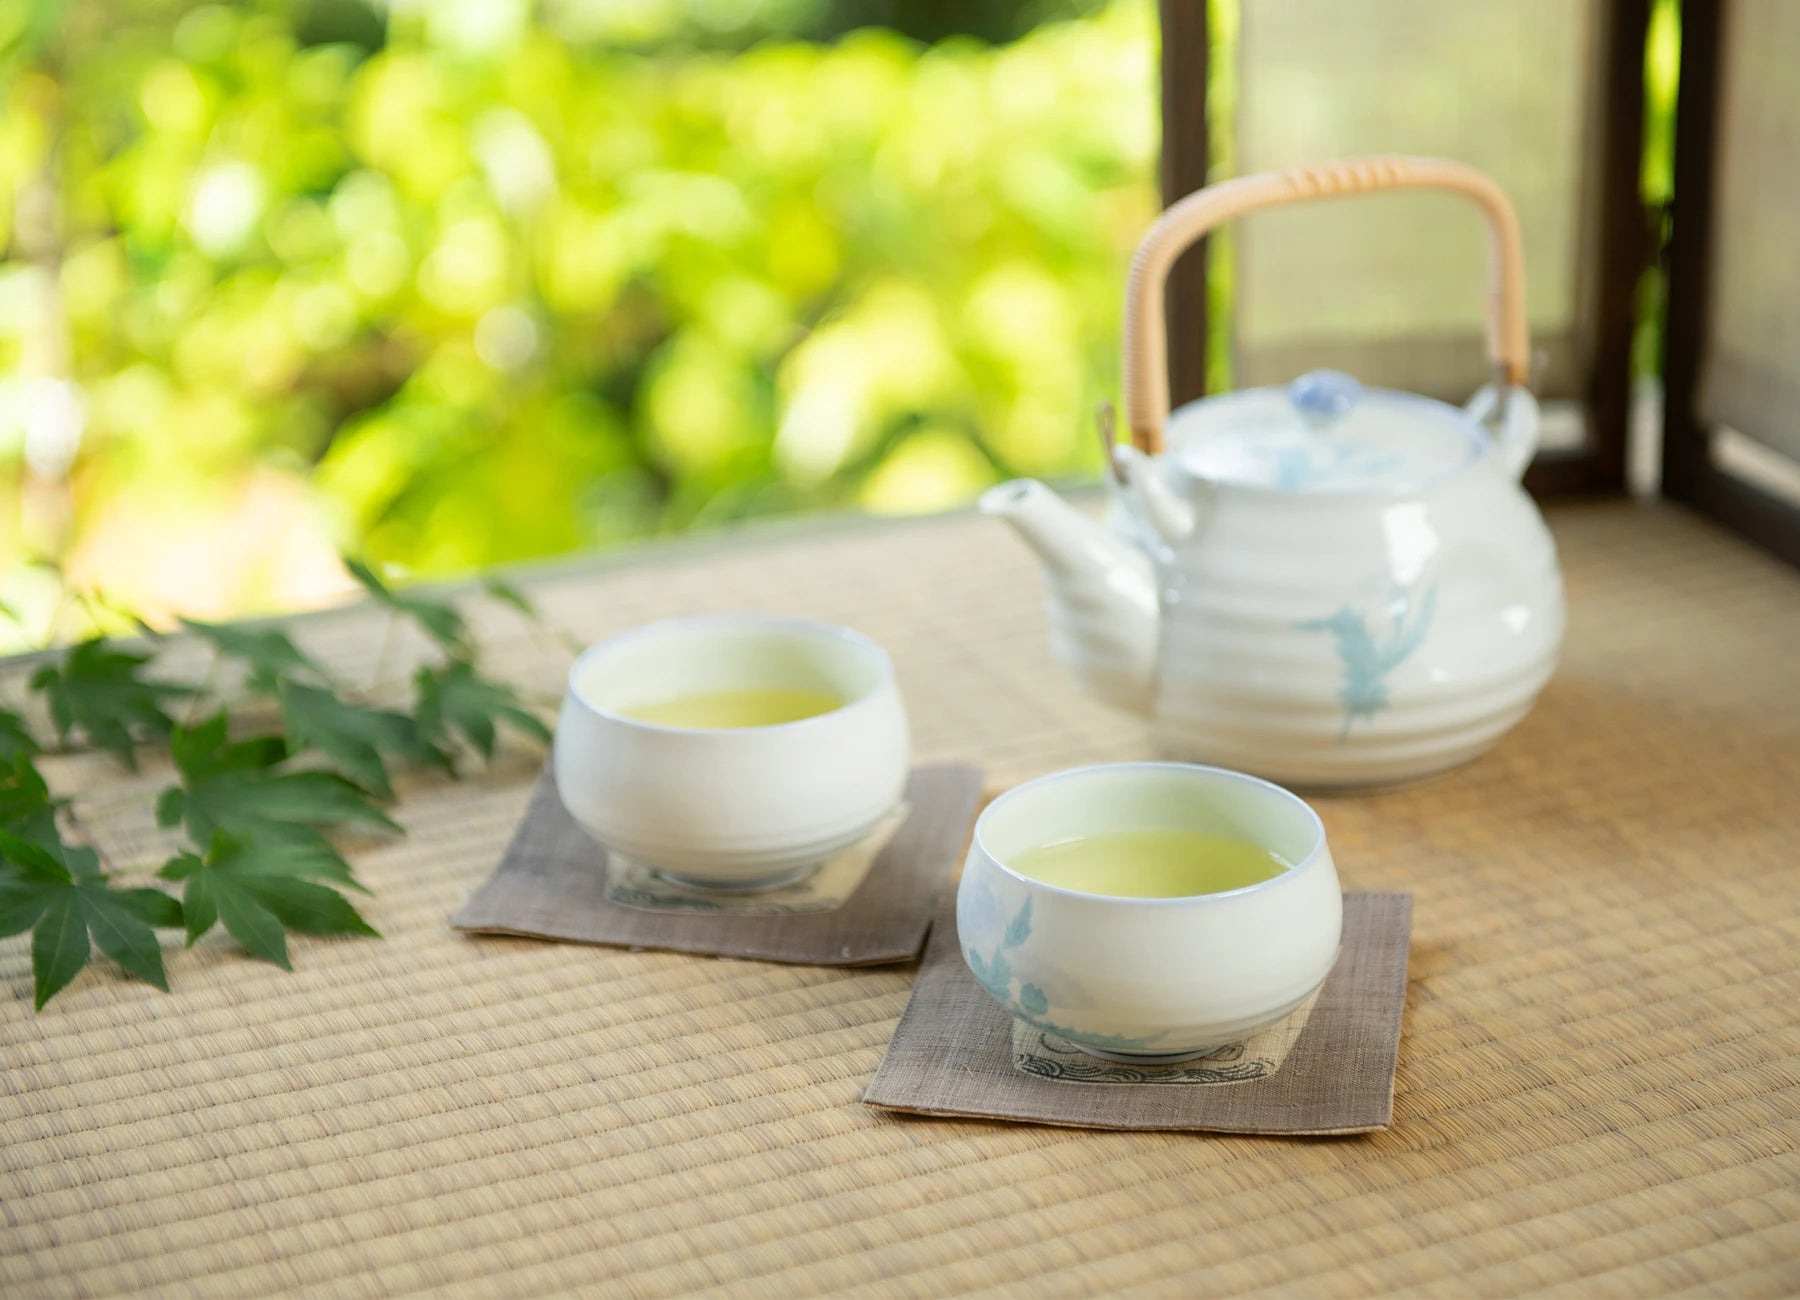 お茶を飲むという日本の庶民の文化を、今の若い世代にも残していきたい